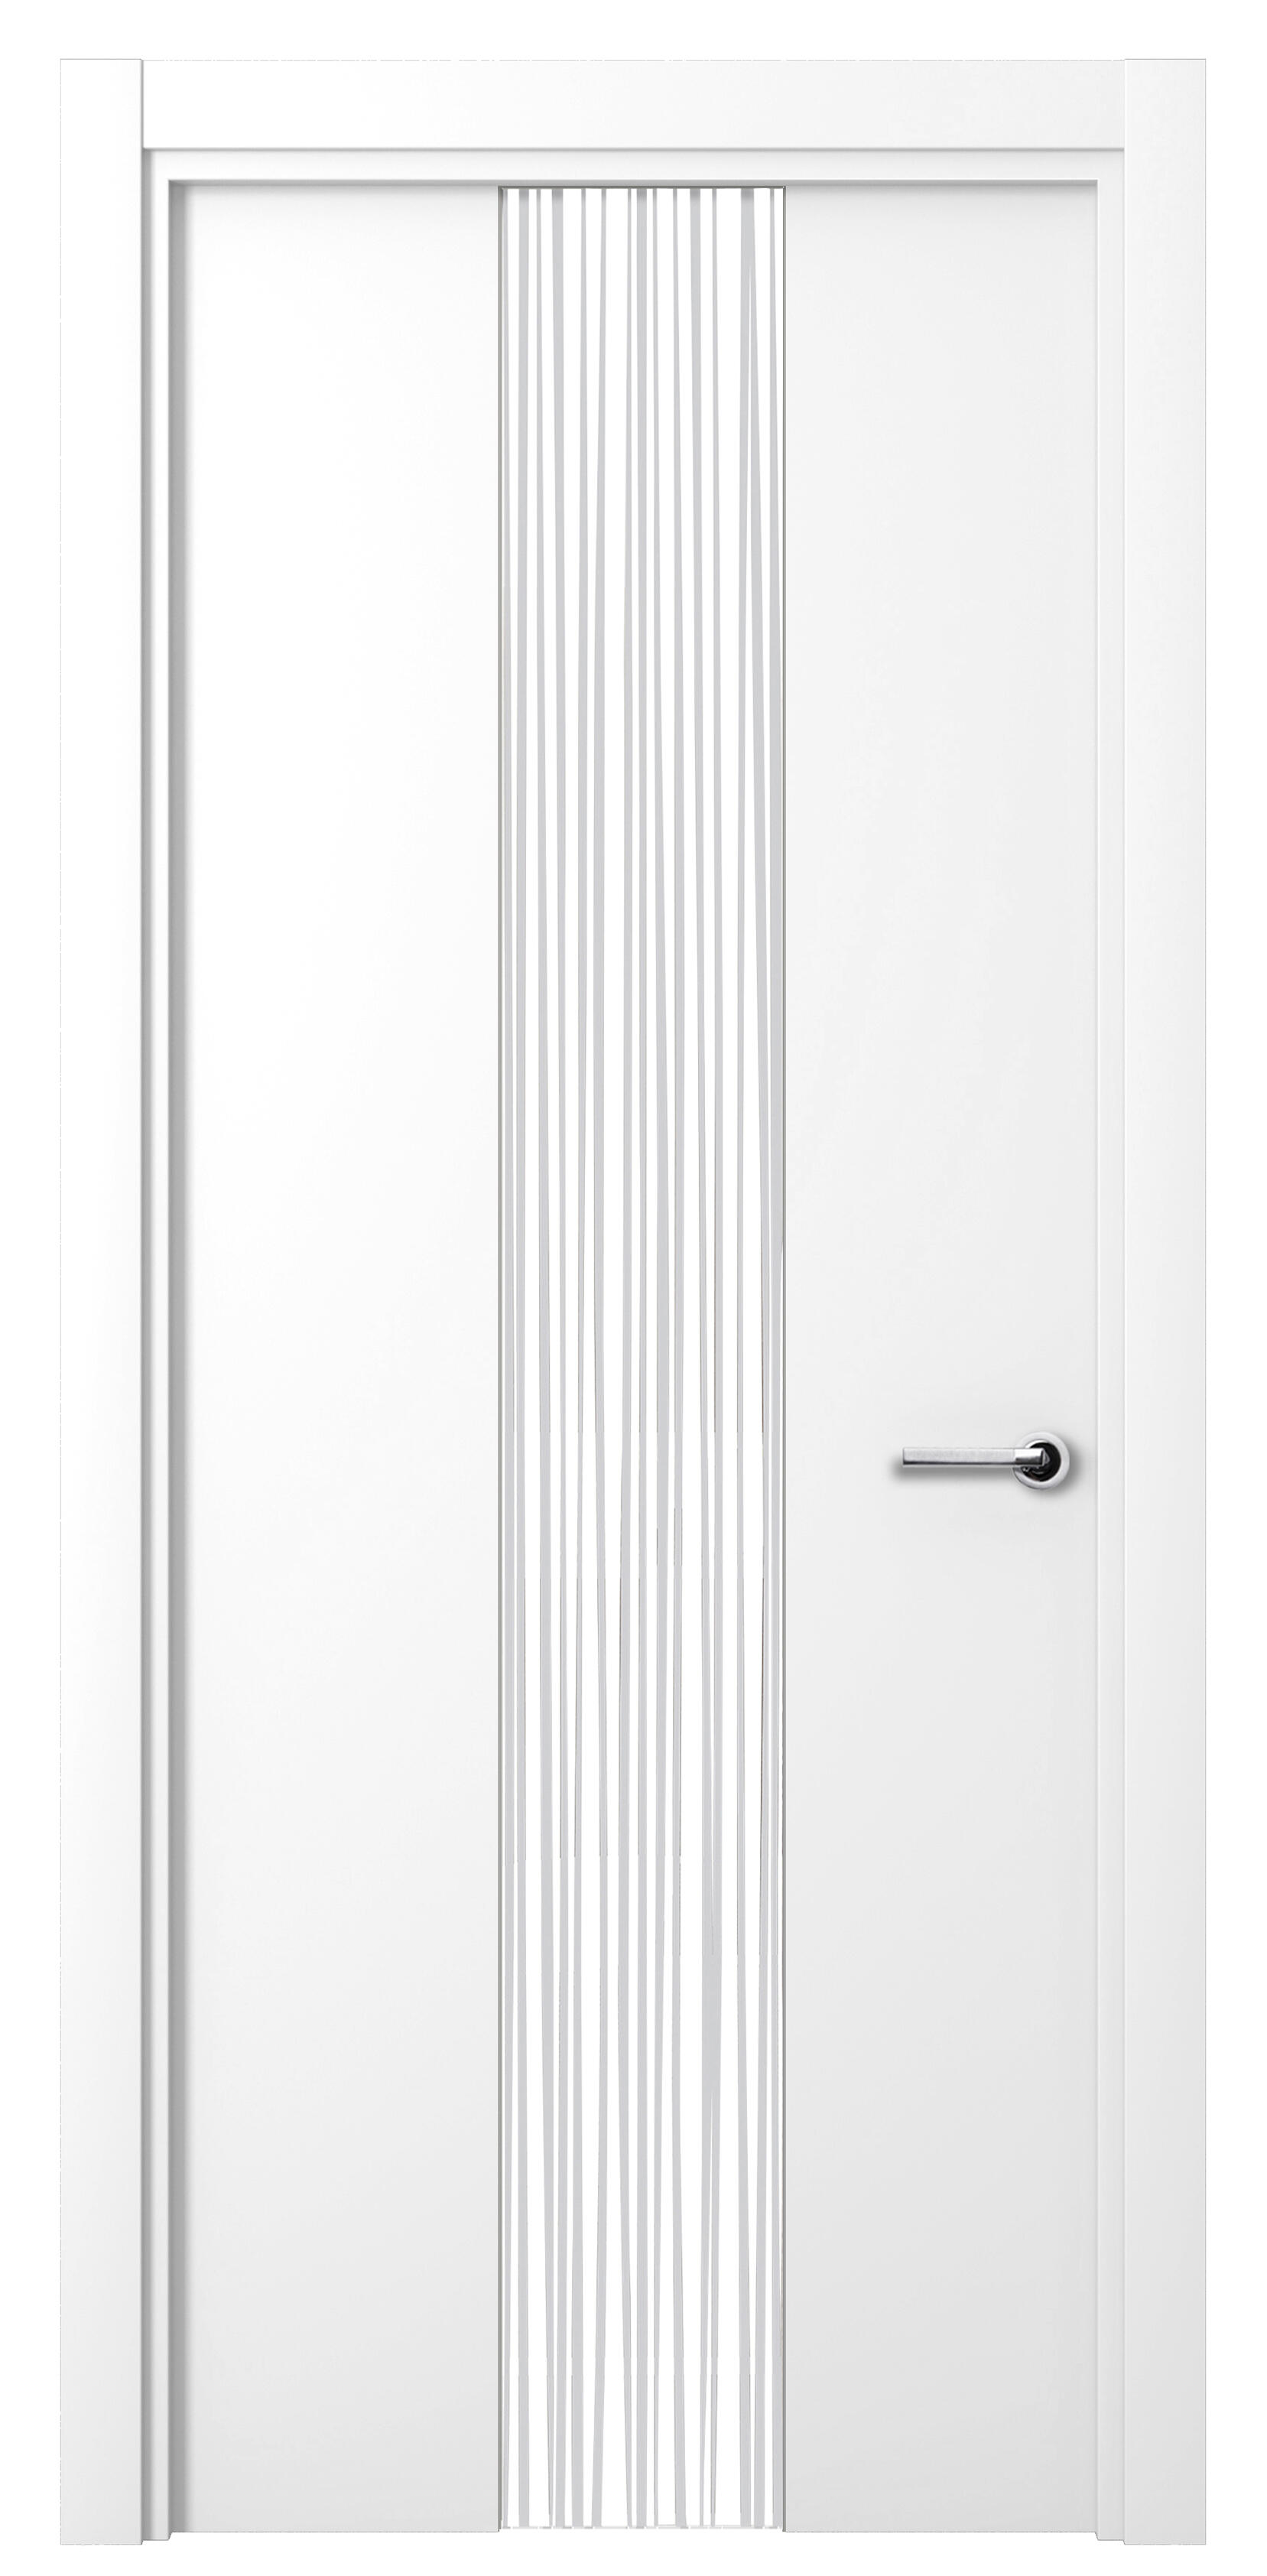 Puerta abatible quevedo blanca premium con cristal blanco izquierda de 82.5